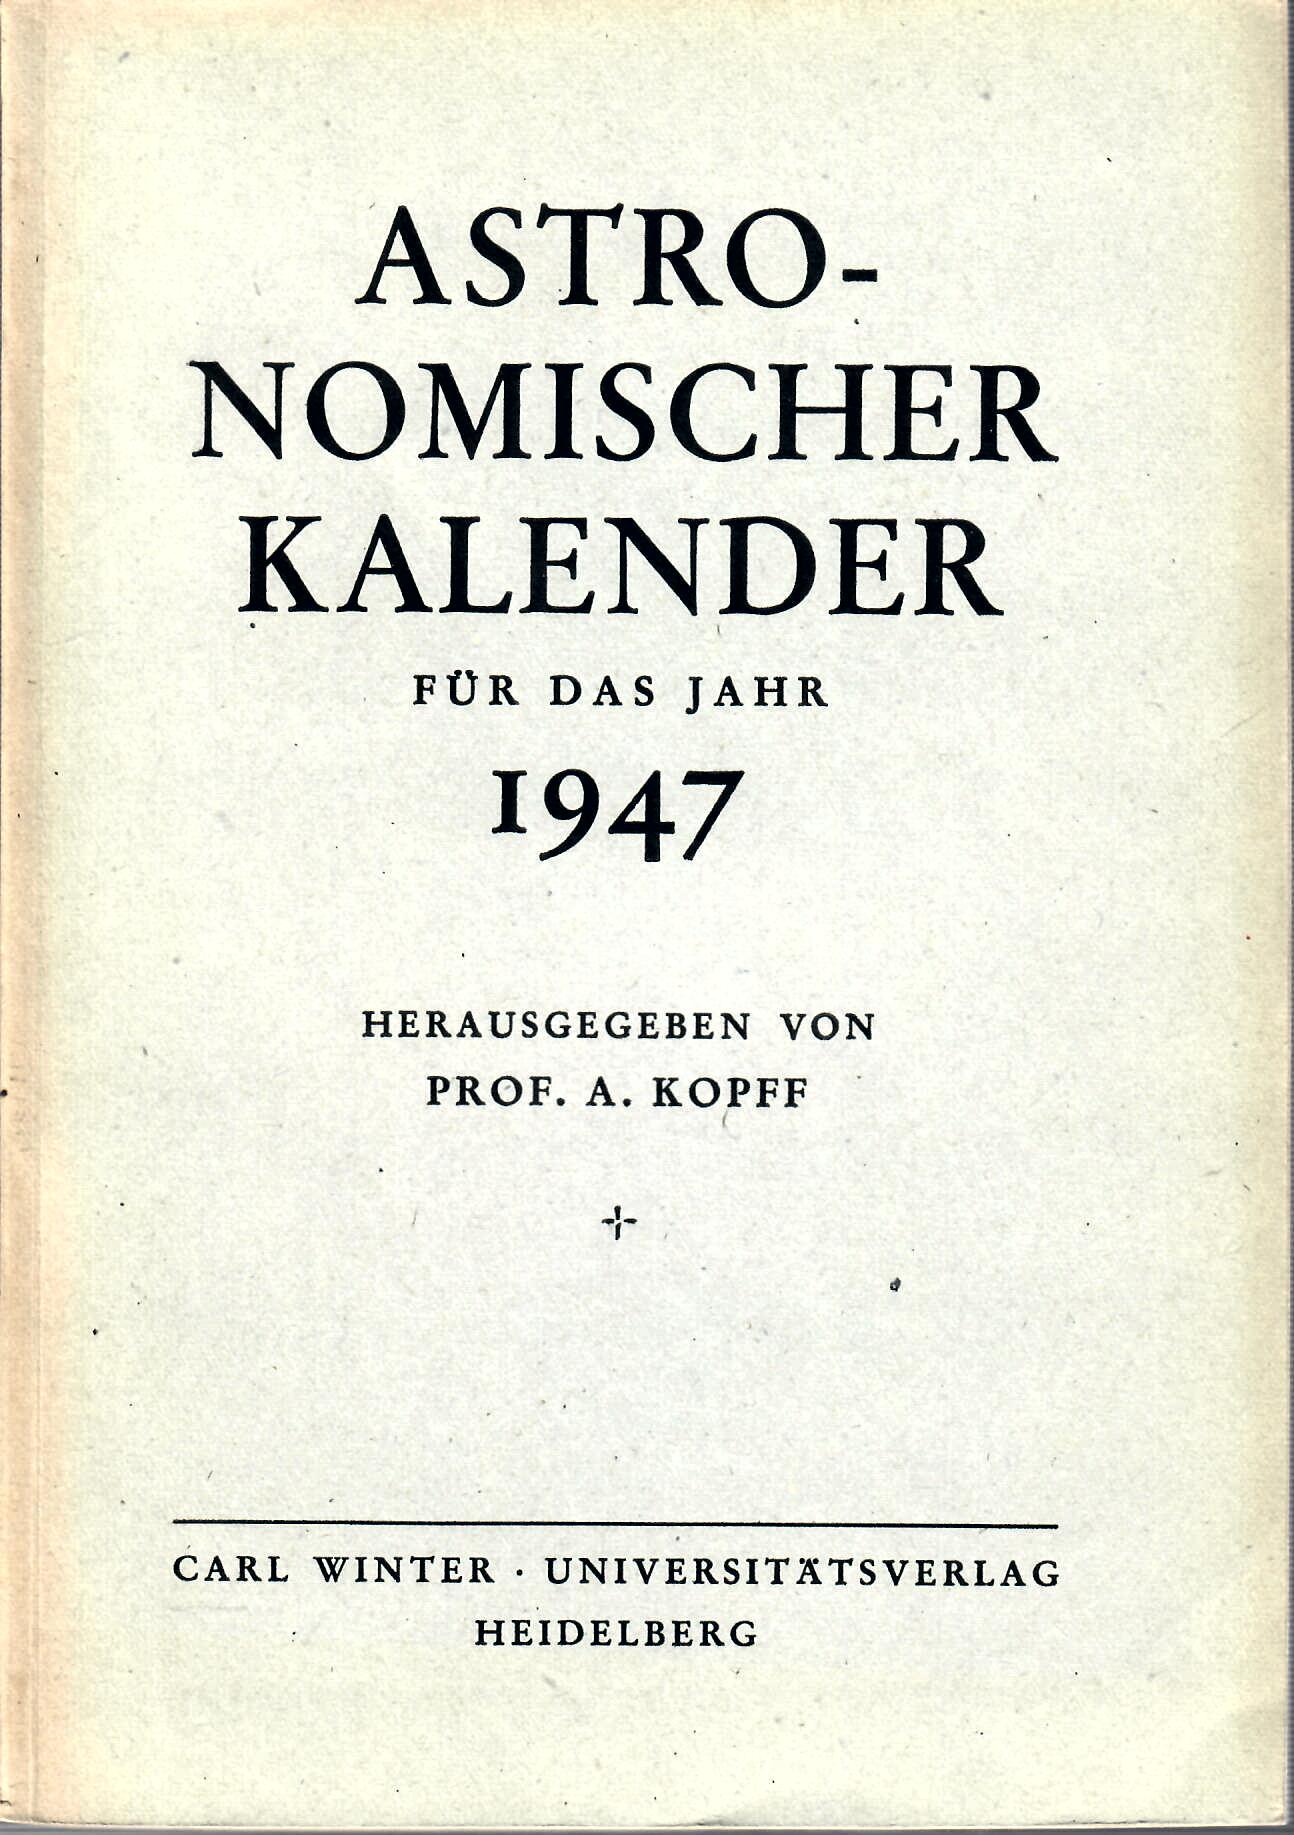 A., Kopff   : Astronomischer Kalender fr das Jahr 1947 herausgegeben von Prof. A. Kopff